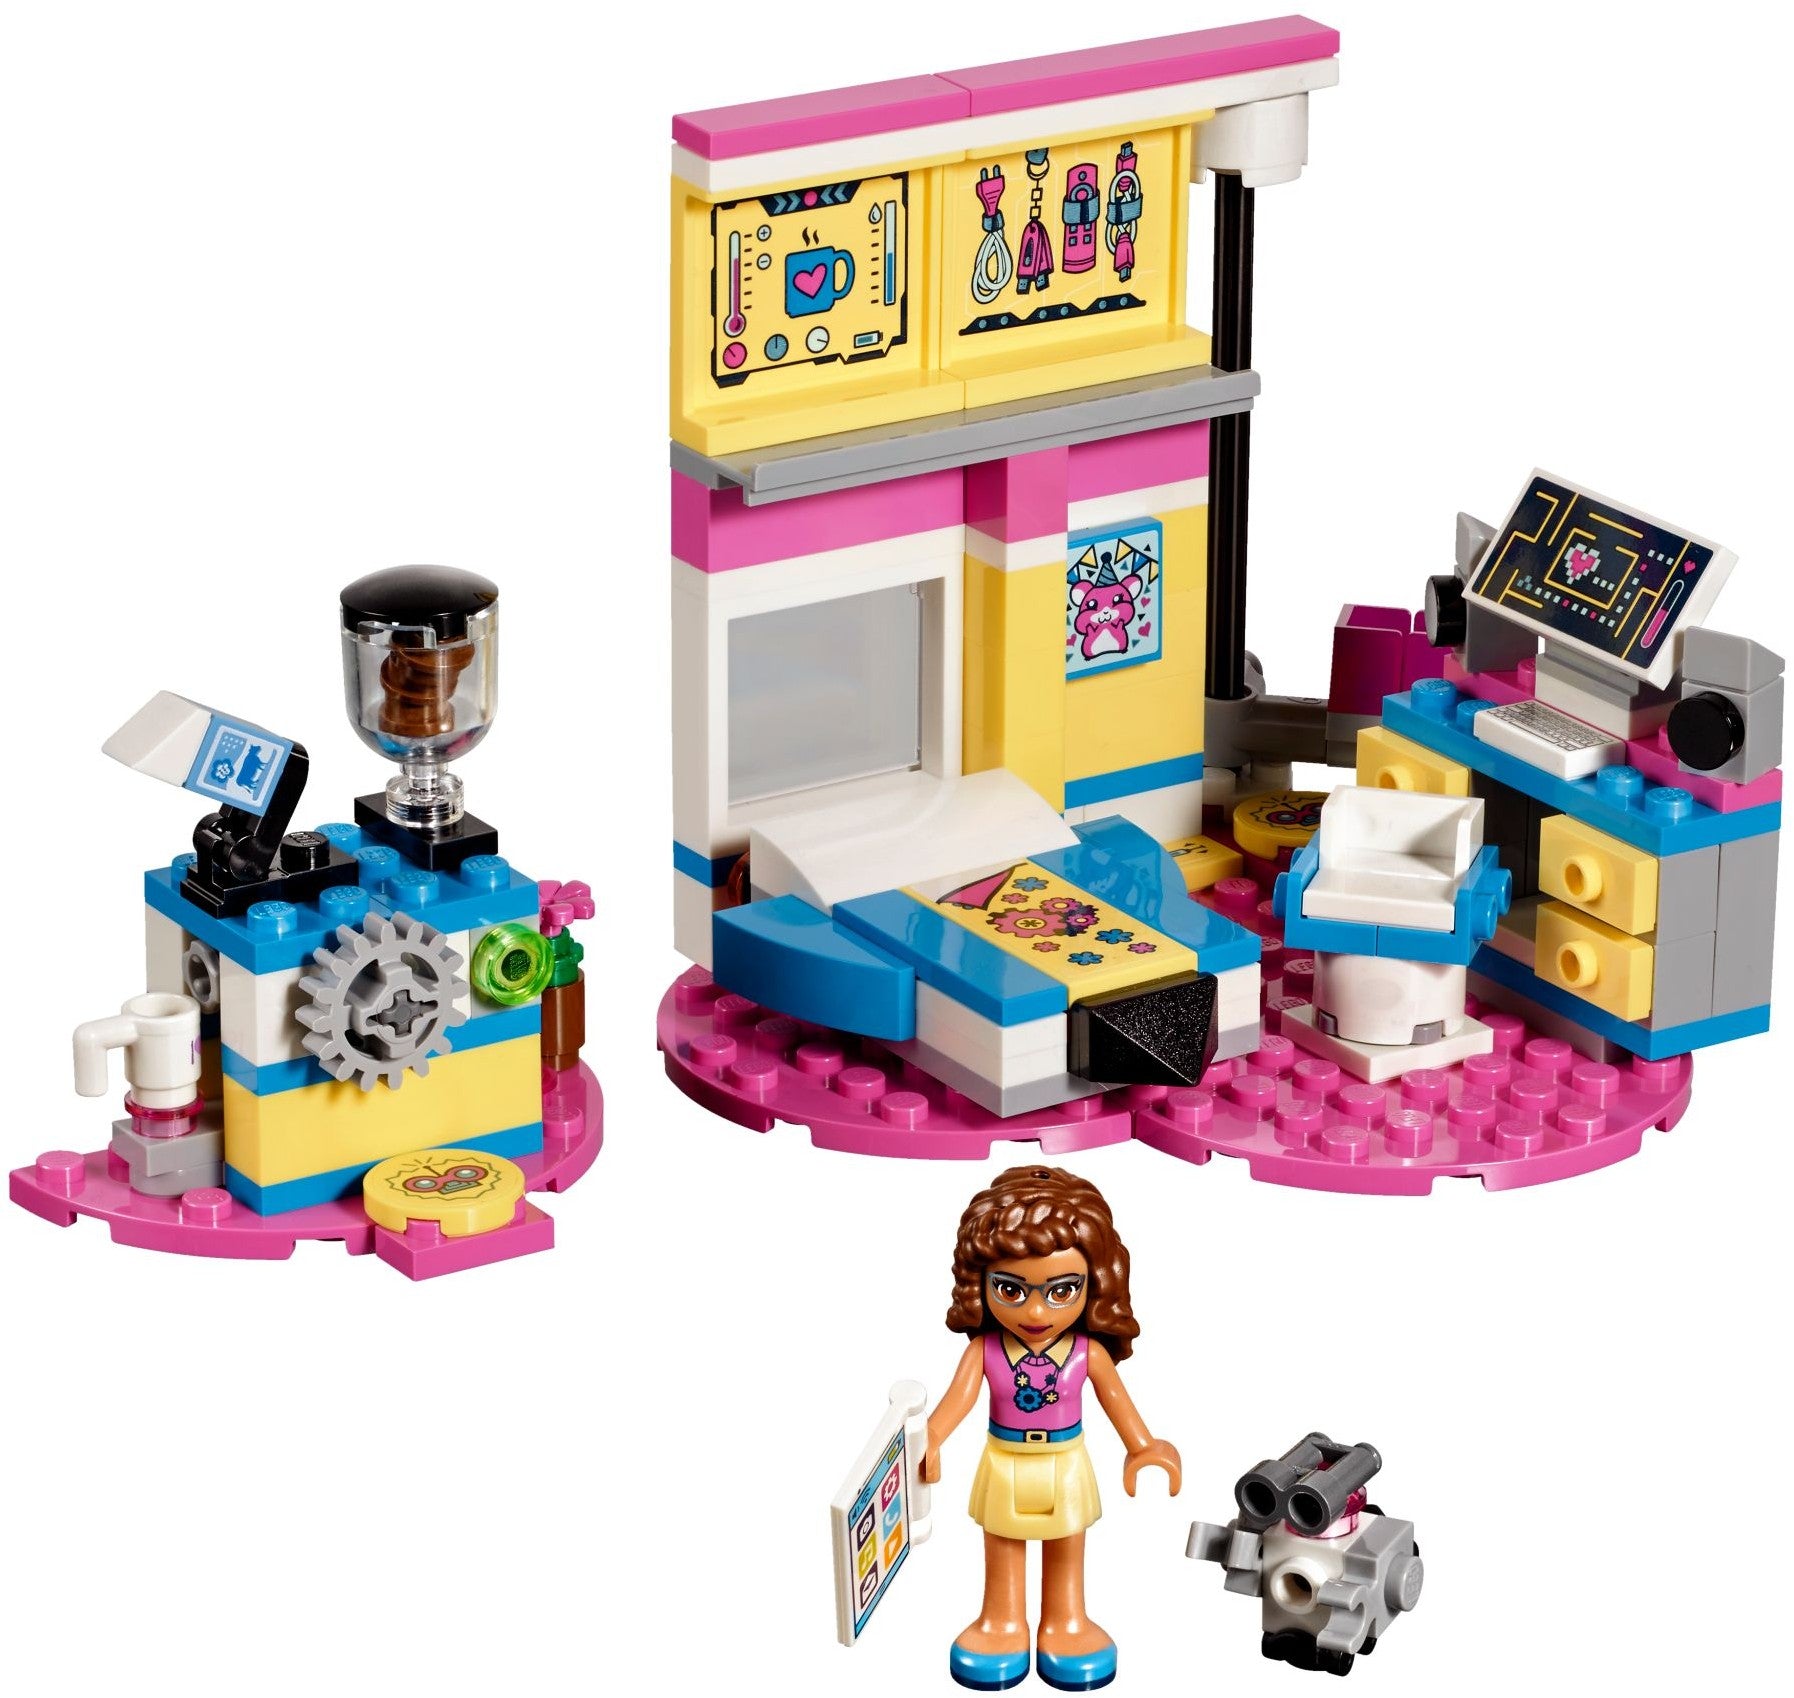 LEGO 41329 Olivia's Deluxe Bedroom